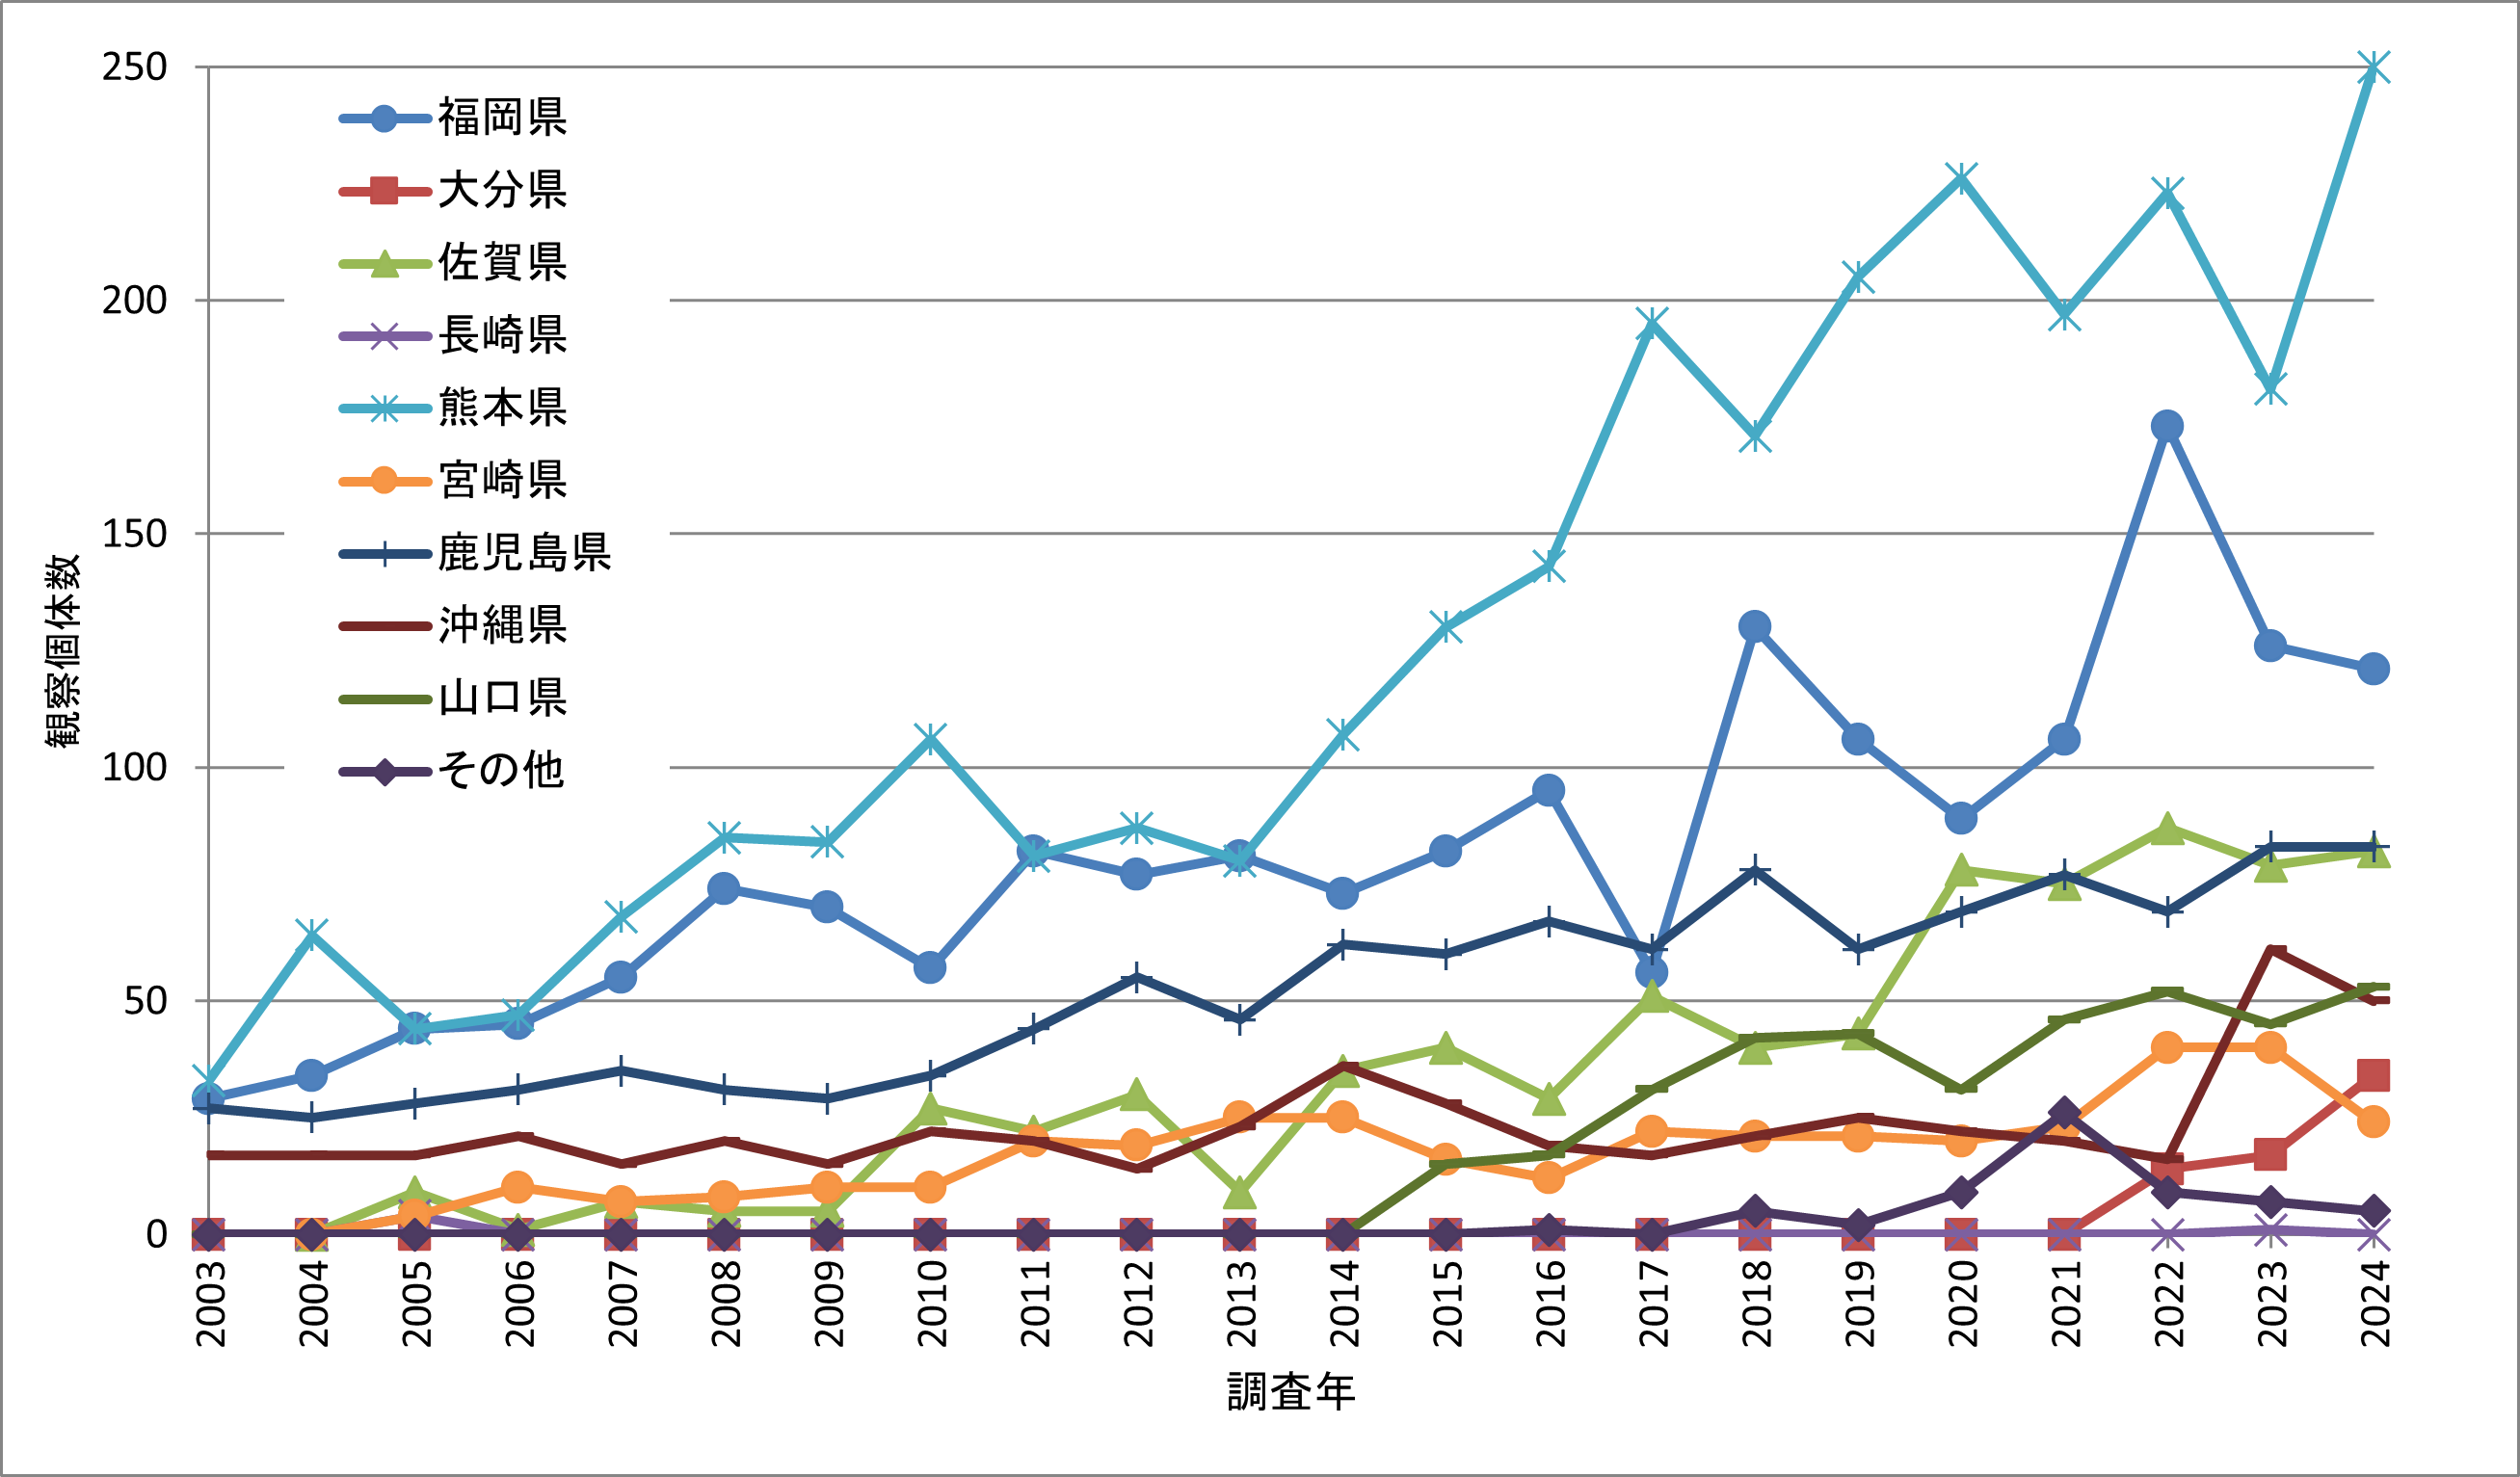 図2.クロツラヘラサギの県別記録数の推移